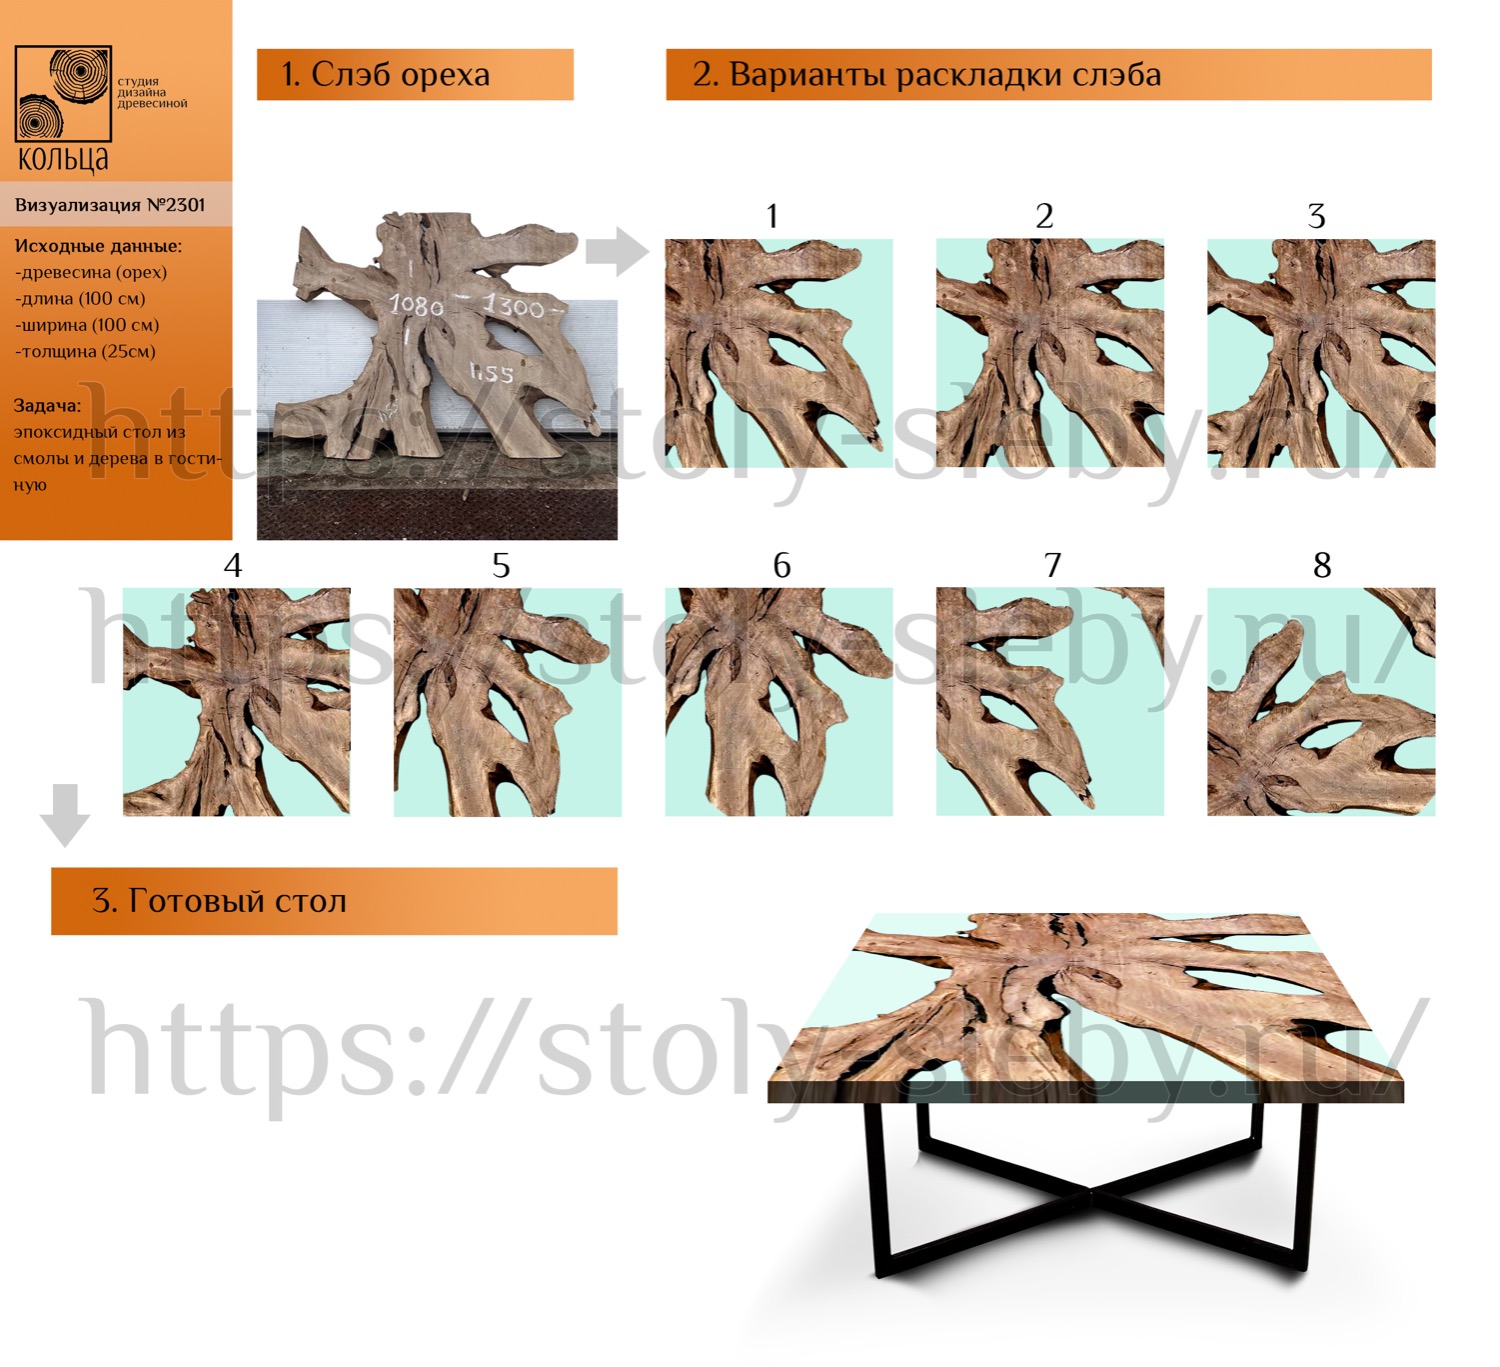 Инфографика: этапы разработки эпоксидного стола из спила ореха - от студии Кольца